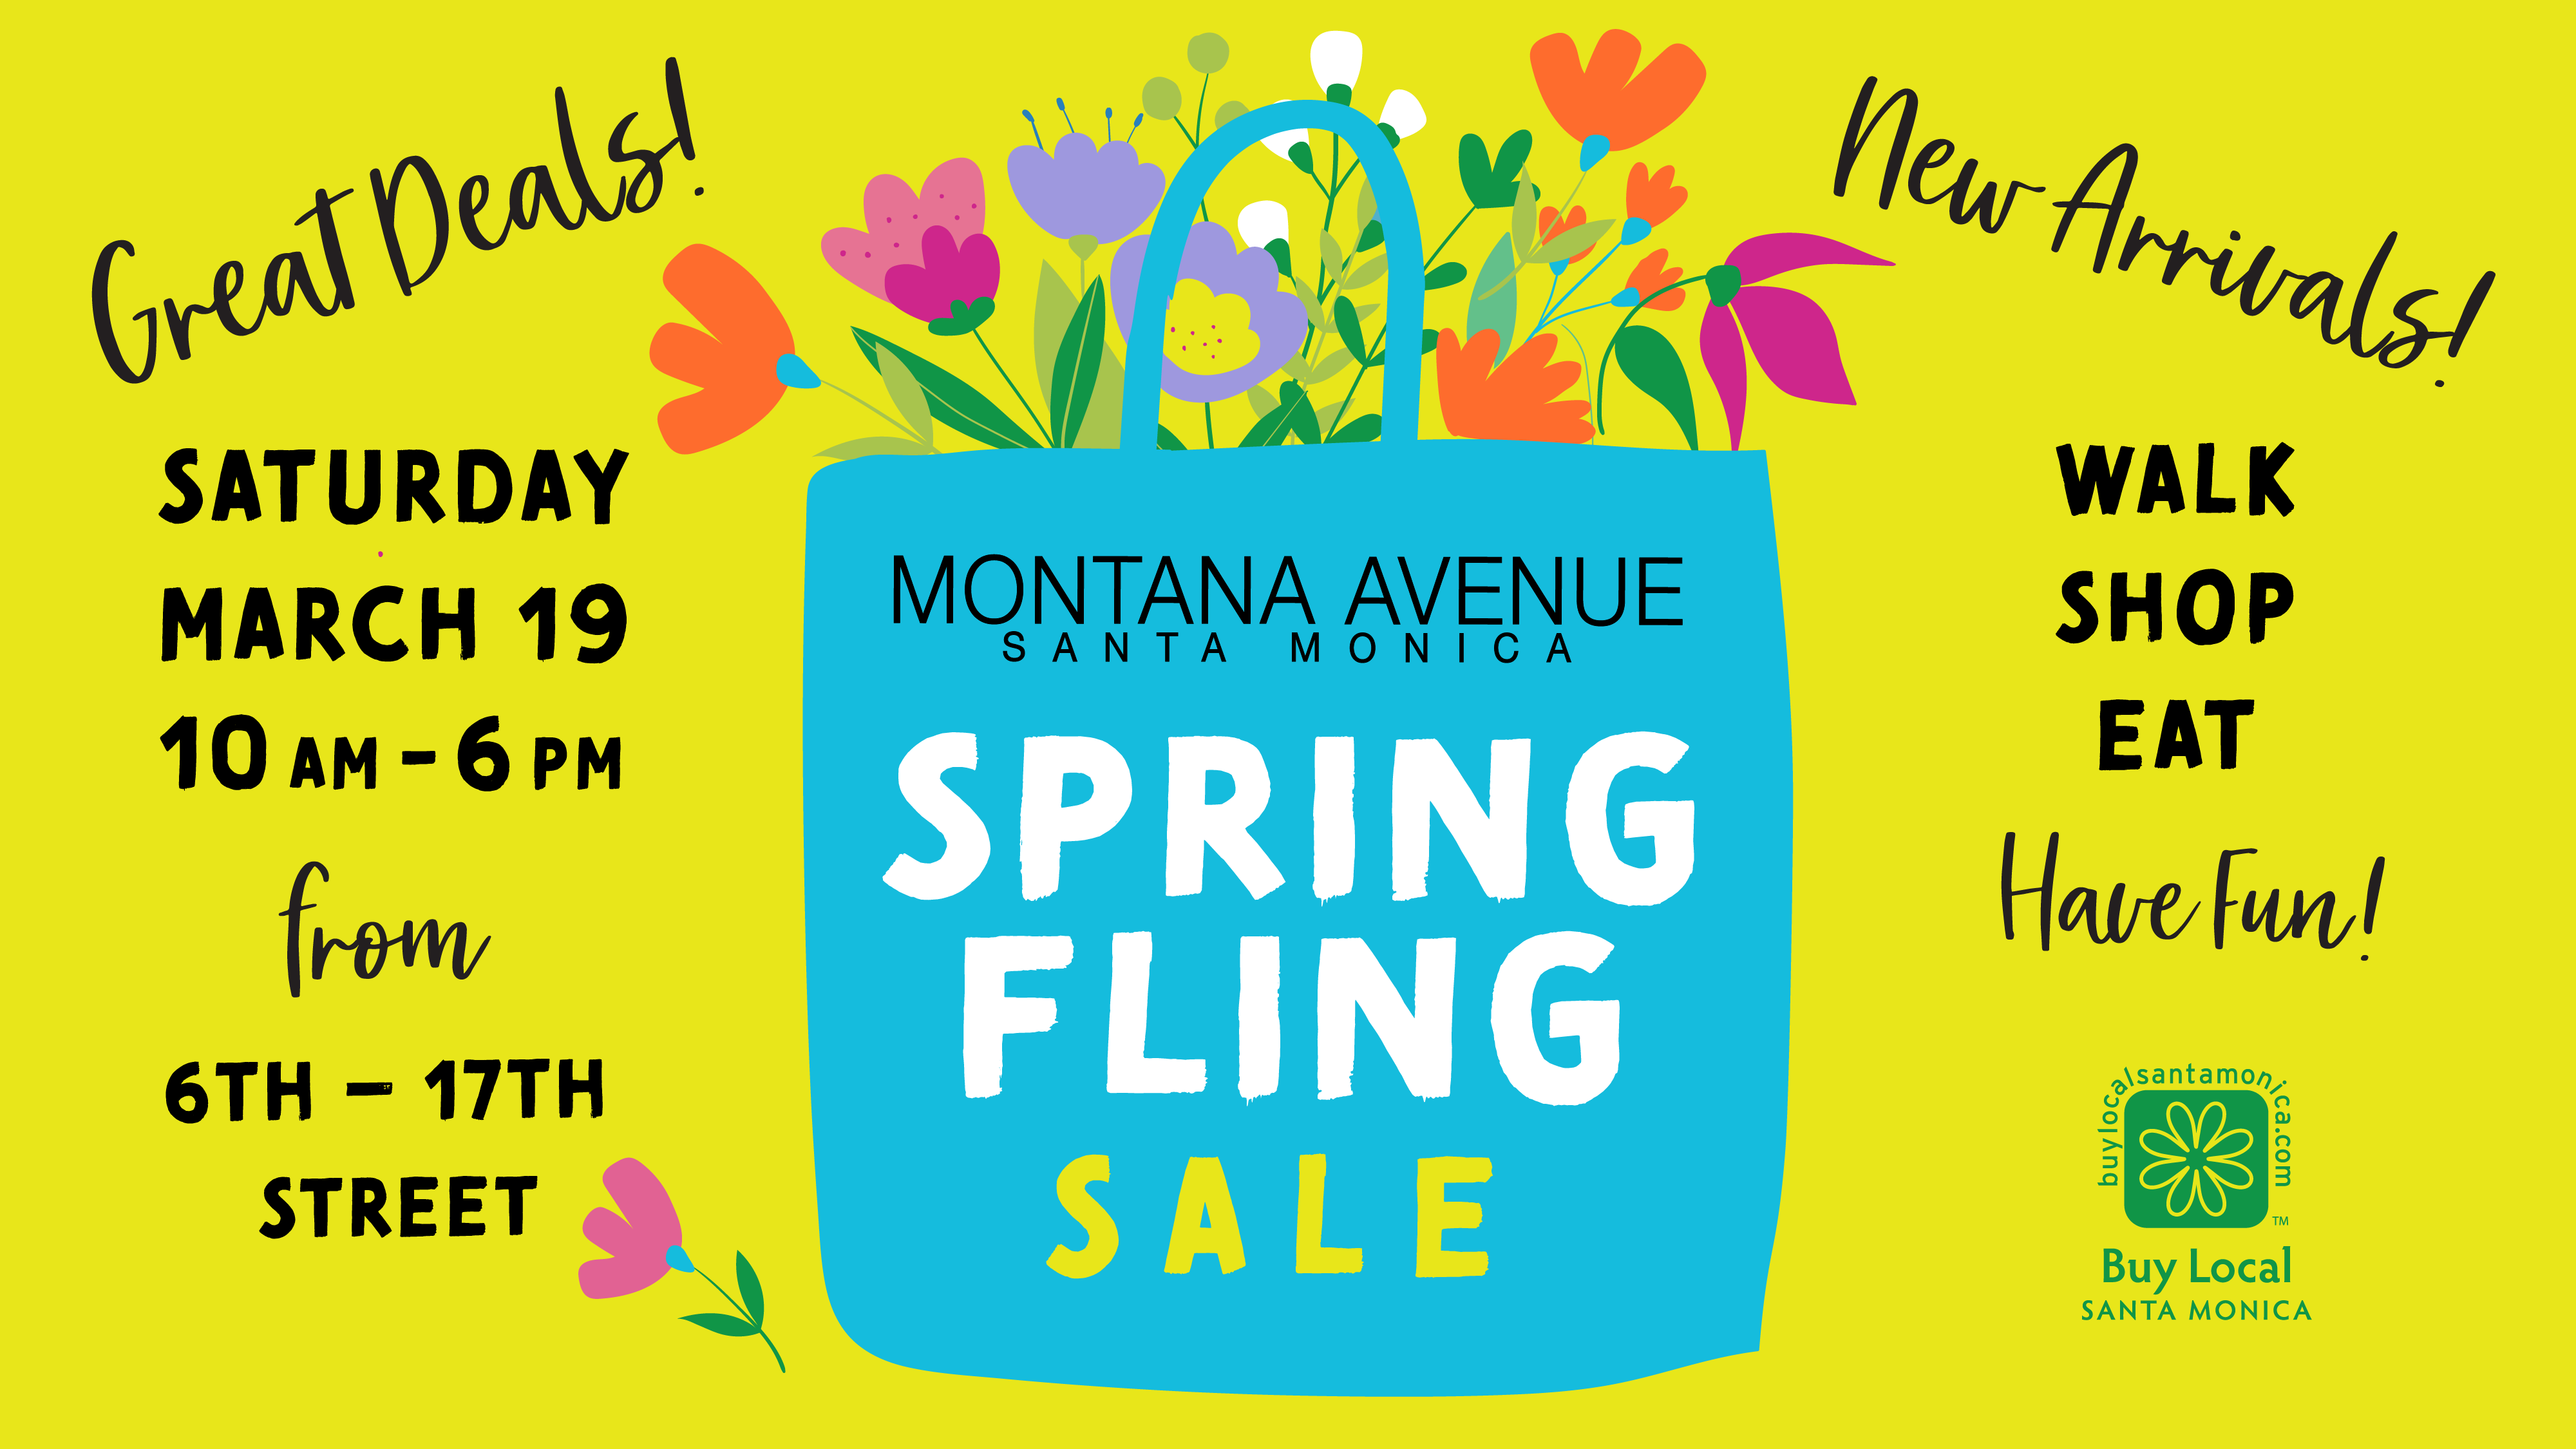 Montana Avenue Spring Fling Weekend Sale